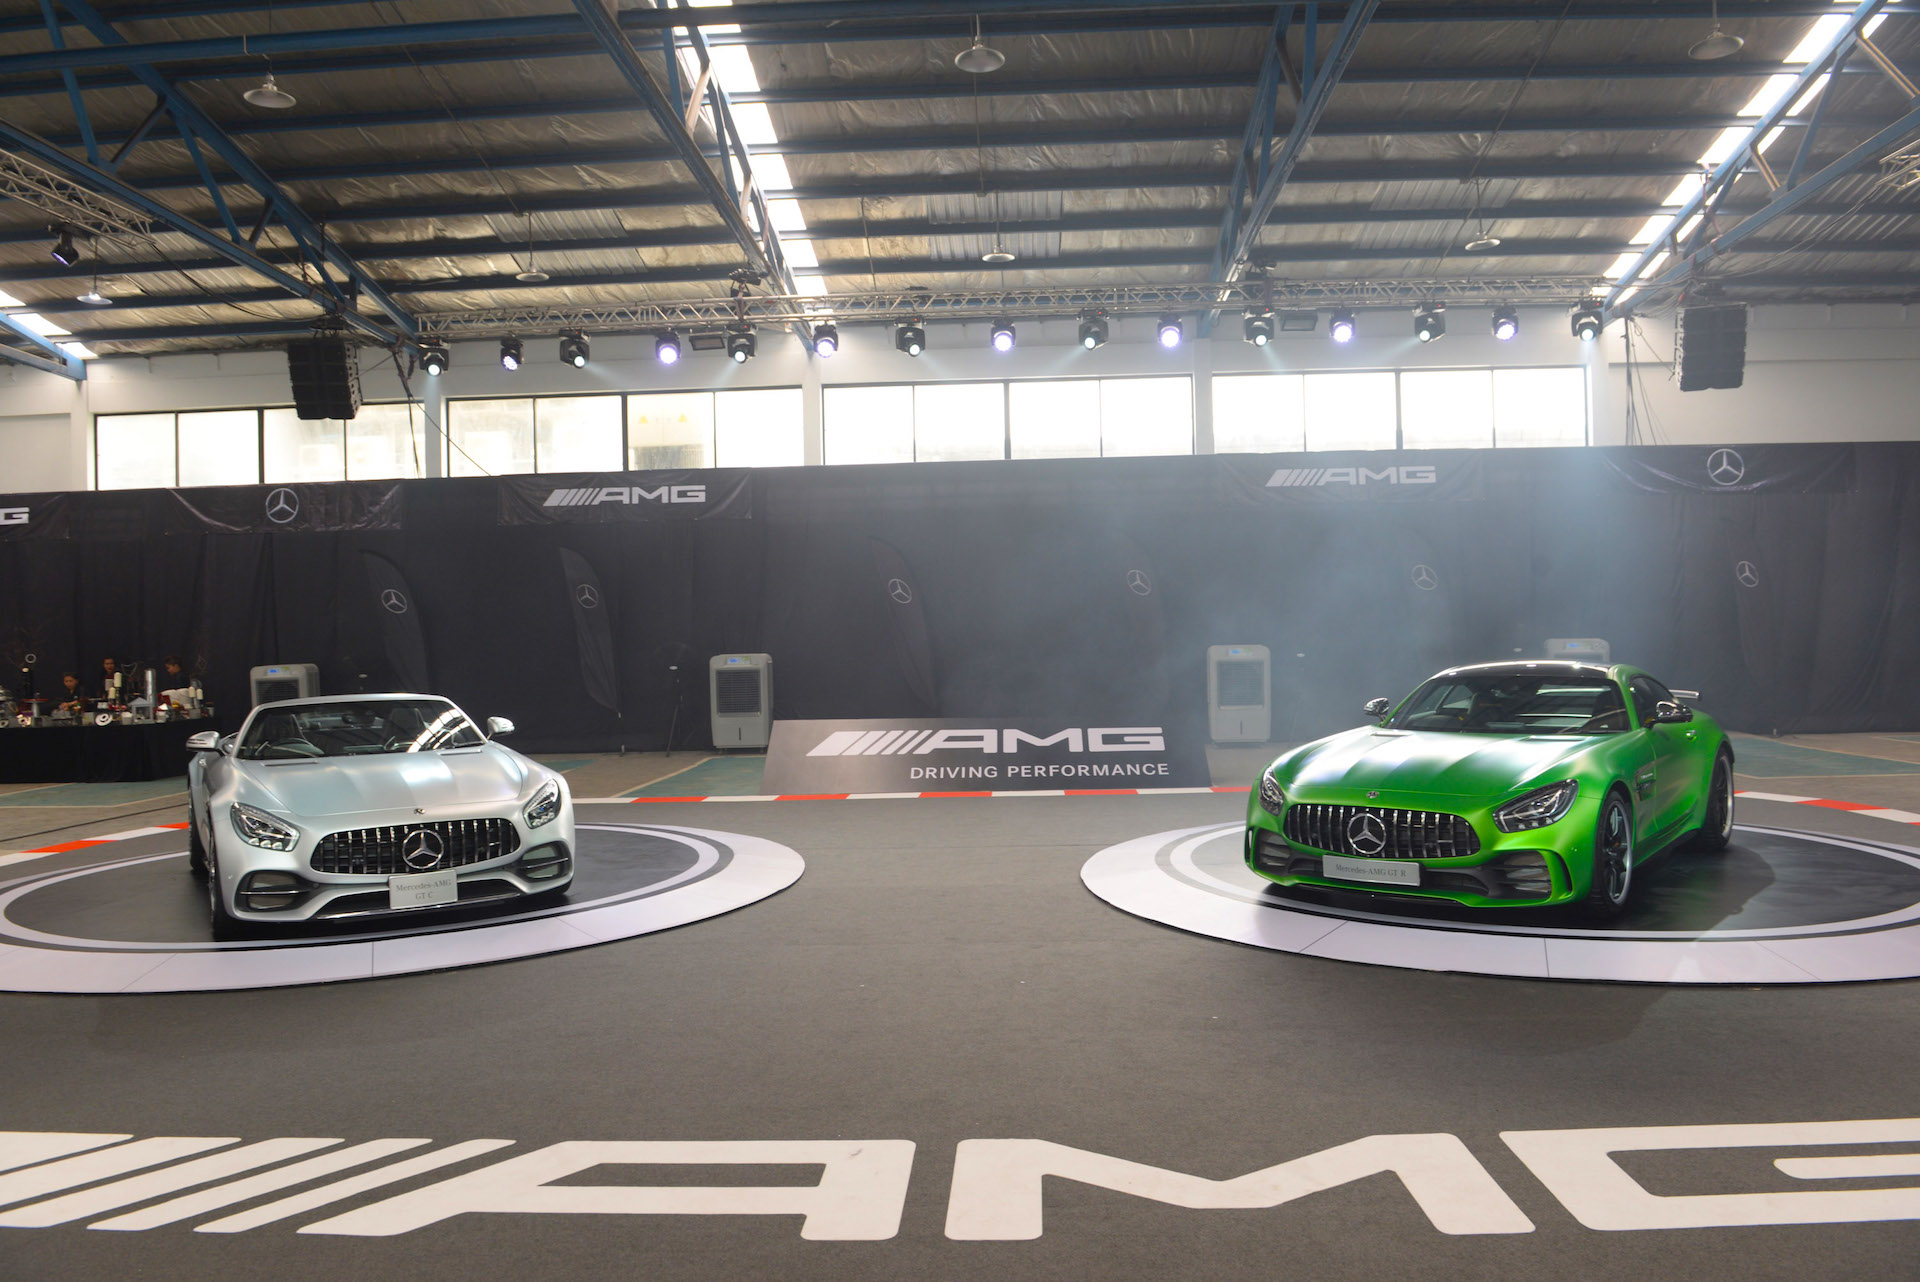 เมอร์เซเดส-เบนซ์ เสริมแกร่งแบรนด์ Mercedes-AMG เปิดตัว 2 รุ่นใหม่ Mercedes-AMG GT R และ Mercedes-AMG GT C ตอบสนองทุกความเร้าใจ